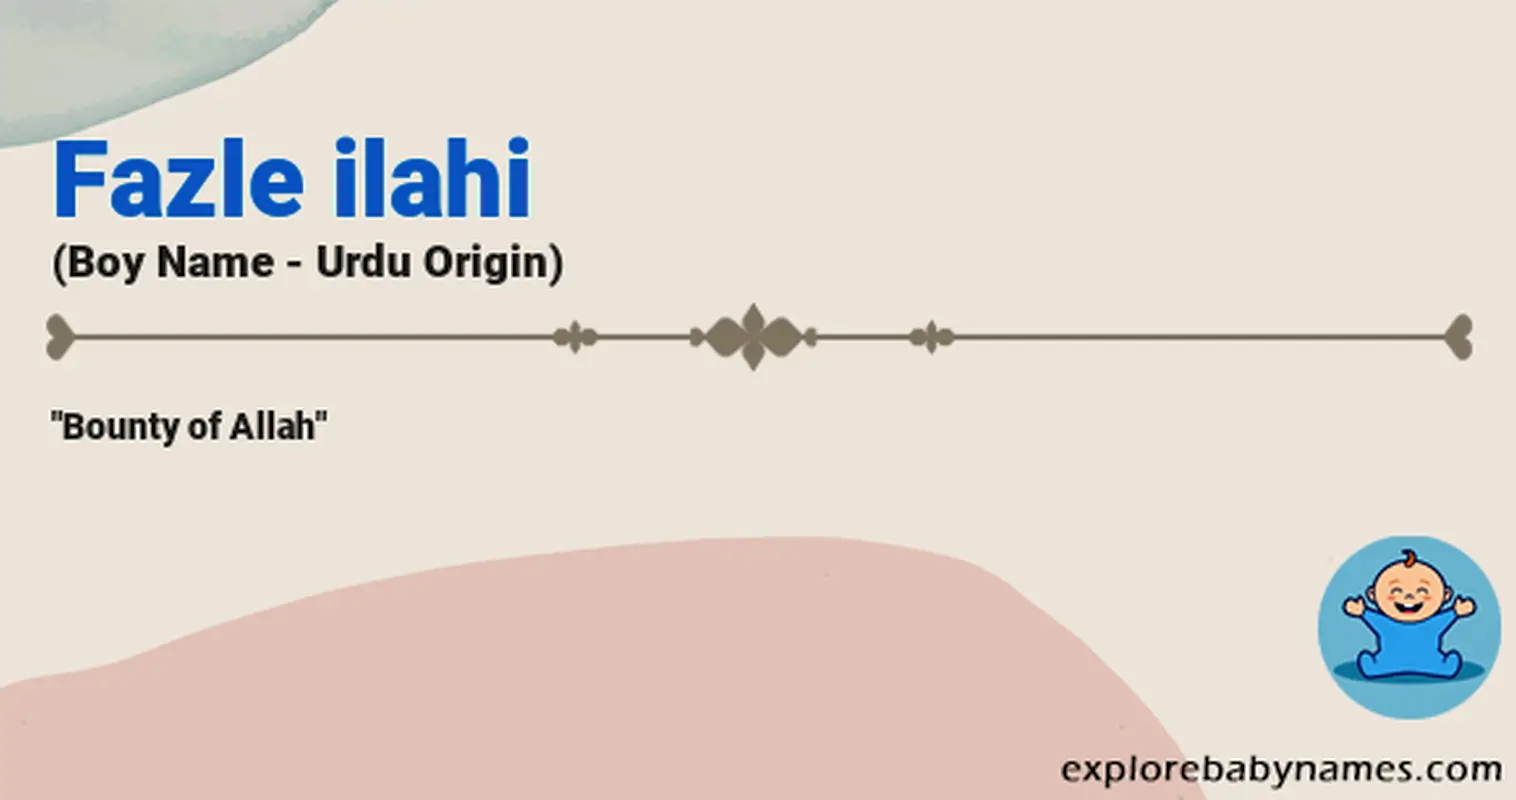 Meaning of Fazle ilahi